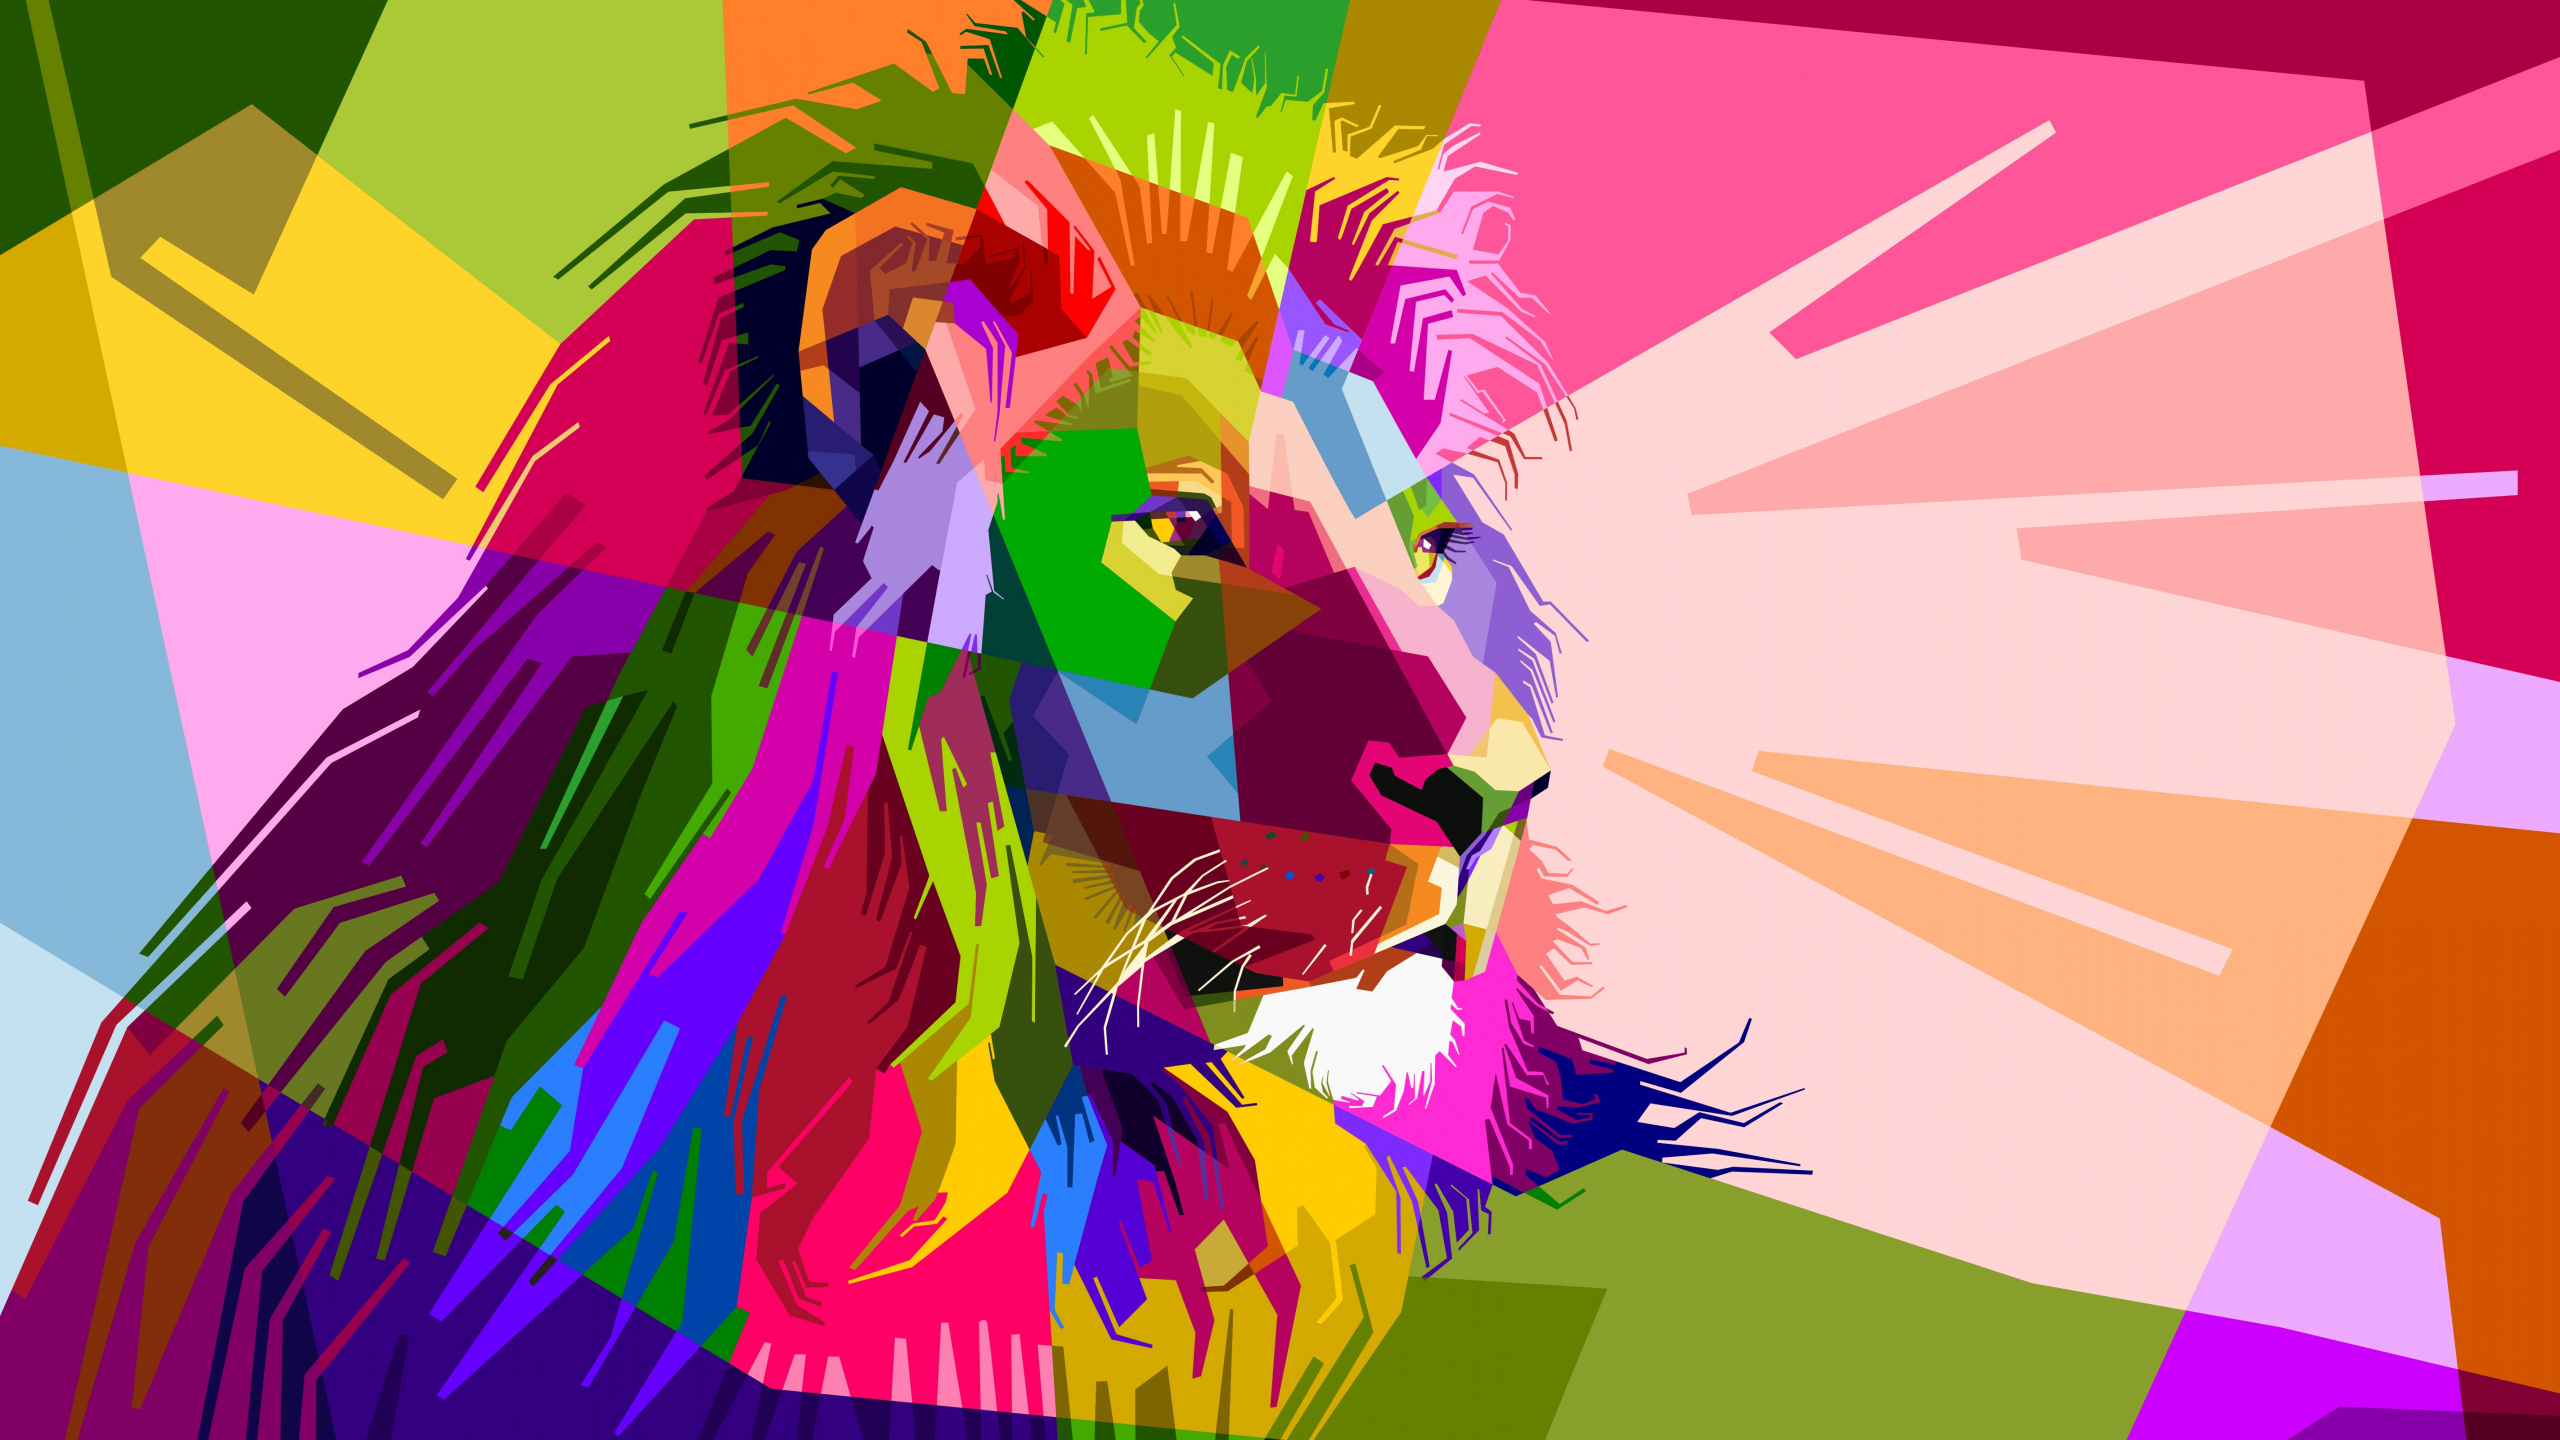 狮子, 艺术, 流行艺术, 图形设计, 品红色 壁纸 2560x1440 允许